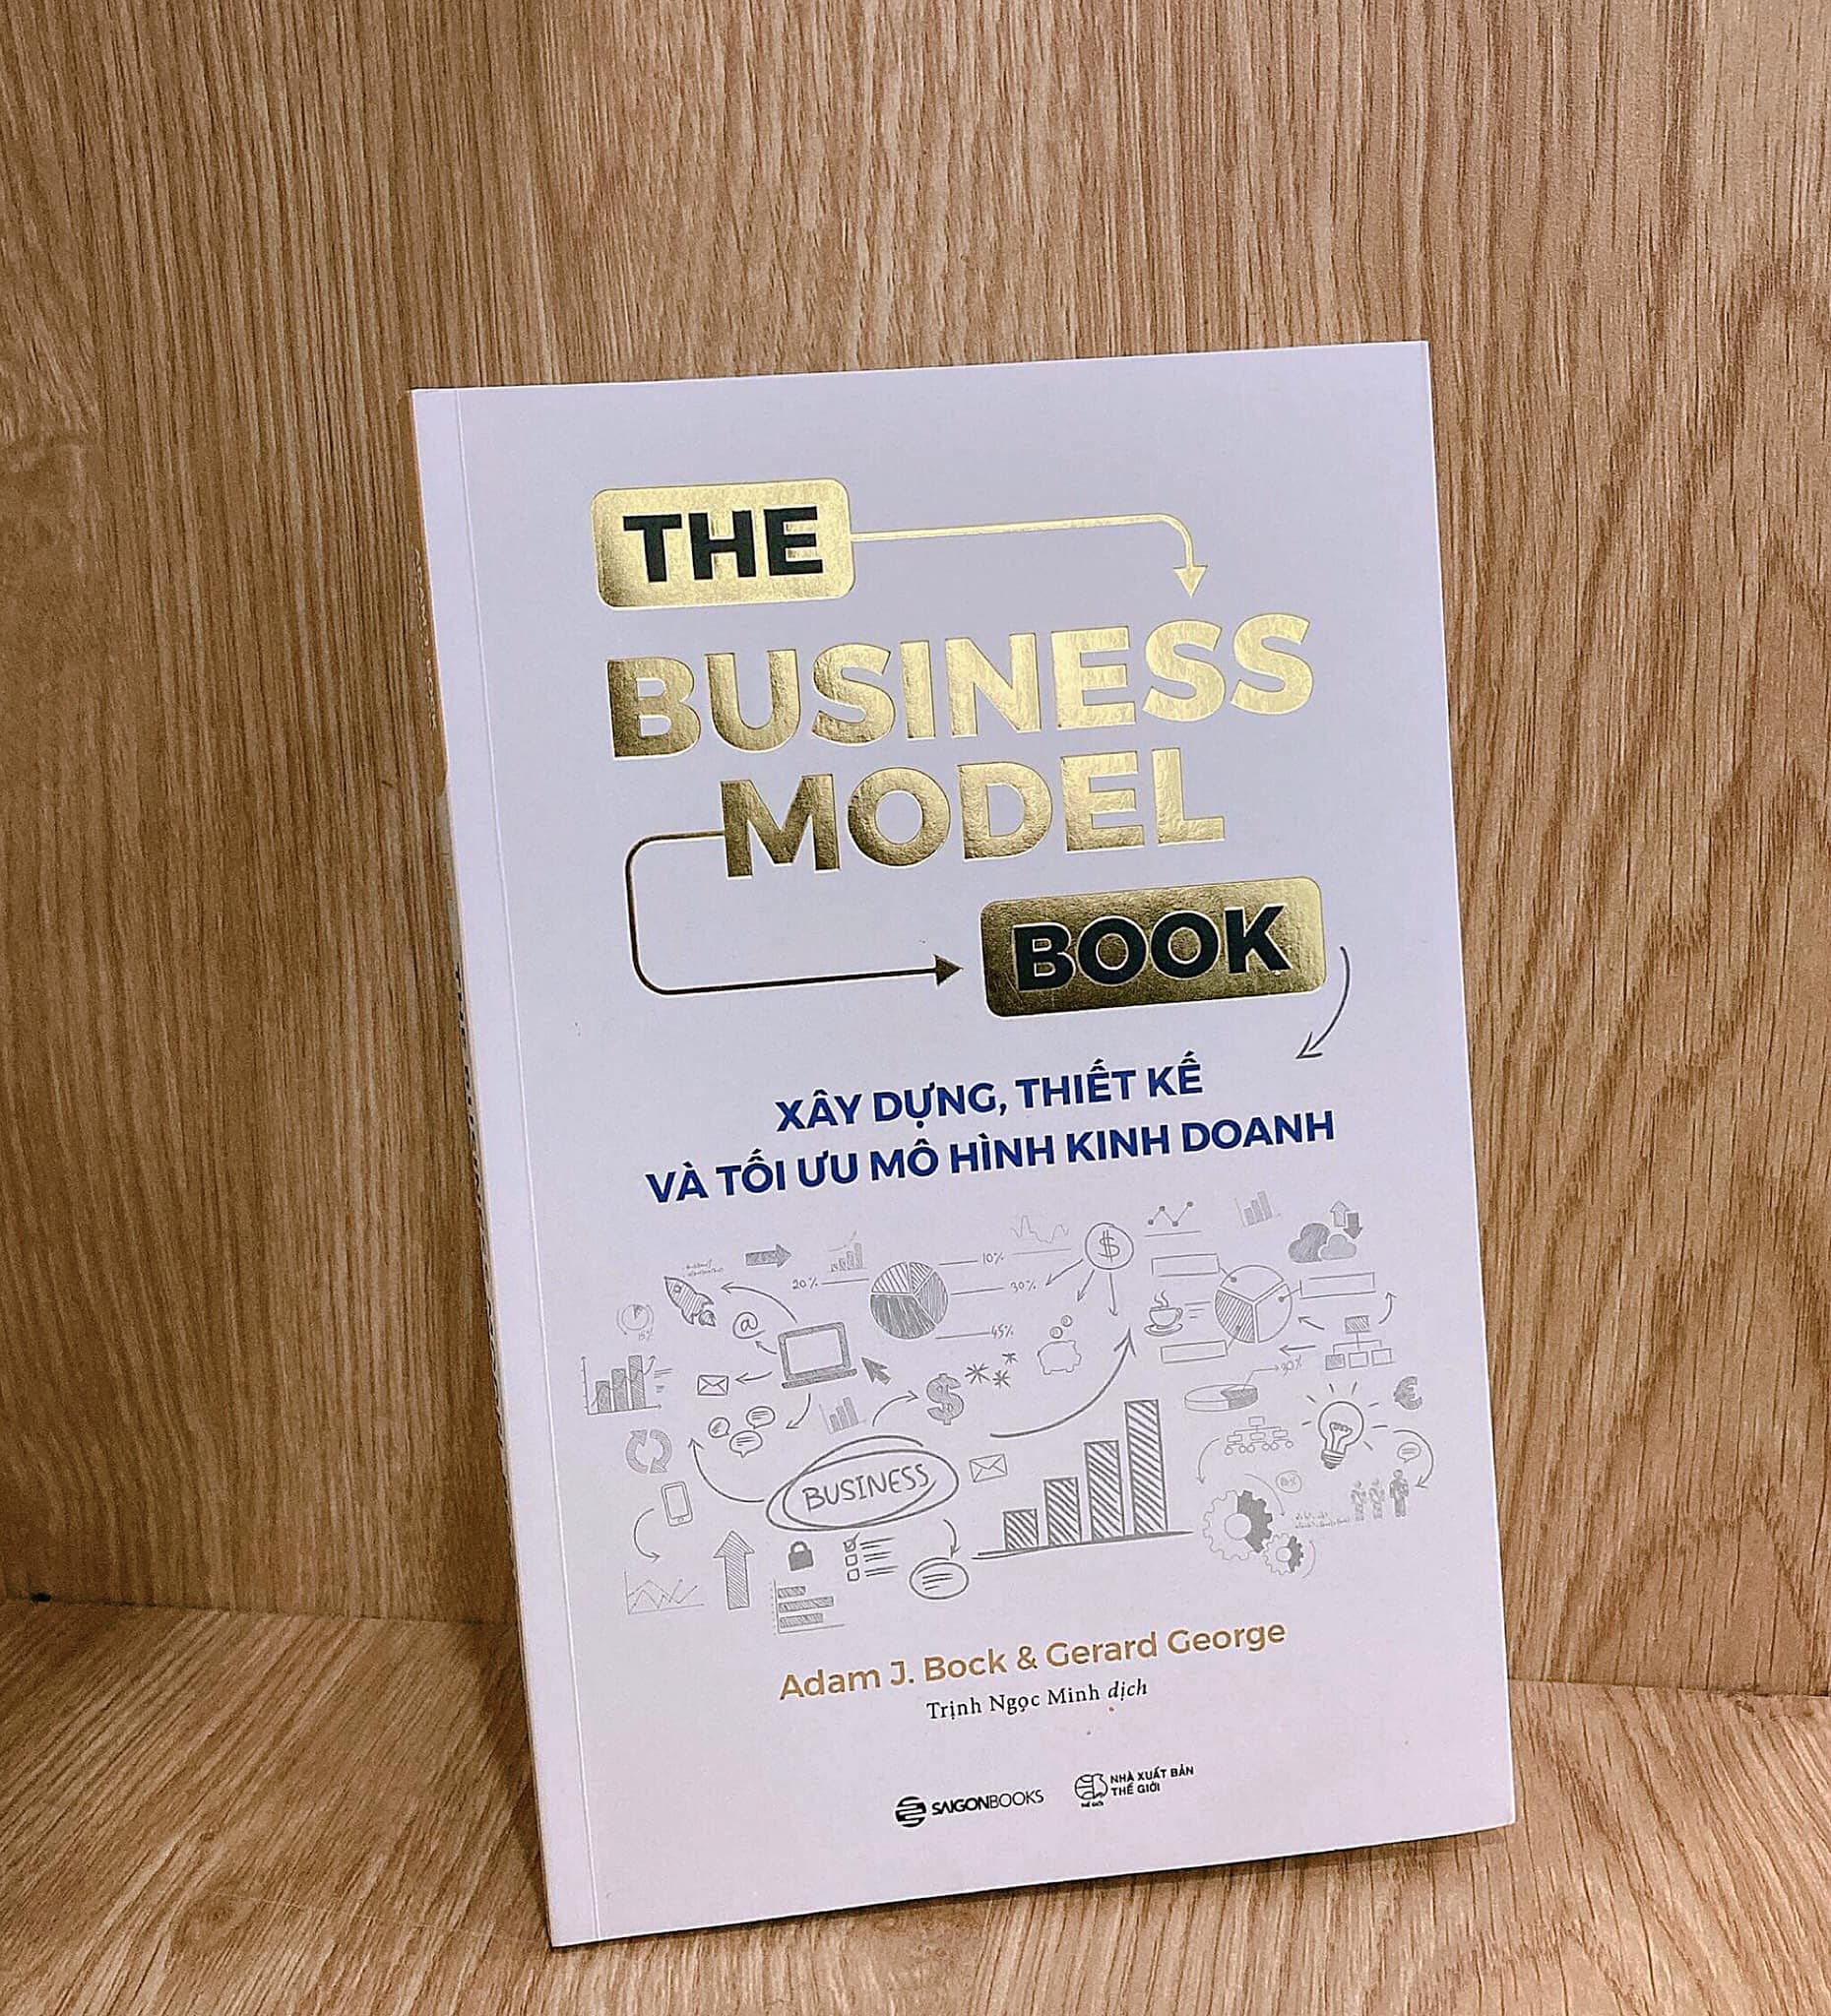 The Business Model Book: Xây dựng, Thiết kế và Tối ưu Mô hình kinh doanh - Tác giả Adam J. Bock , Gerard George - đừng tự lừa gạt chính mình